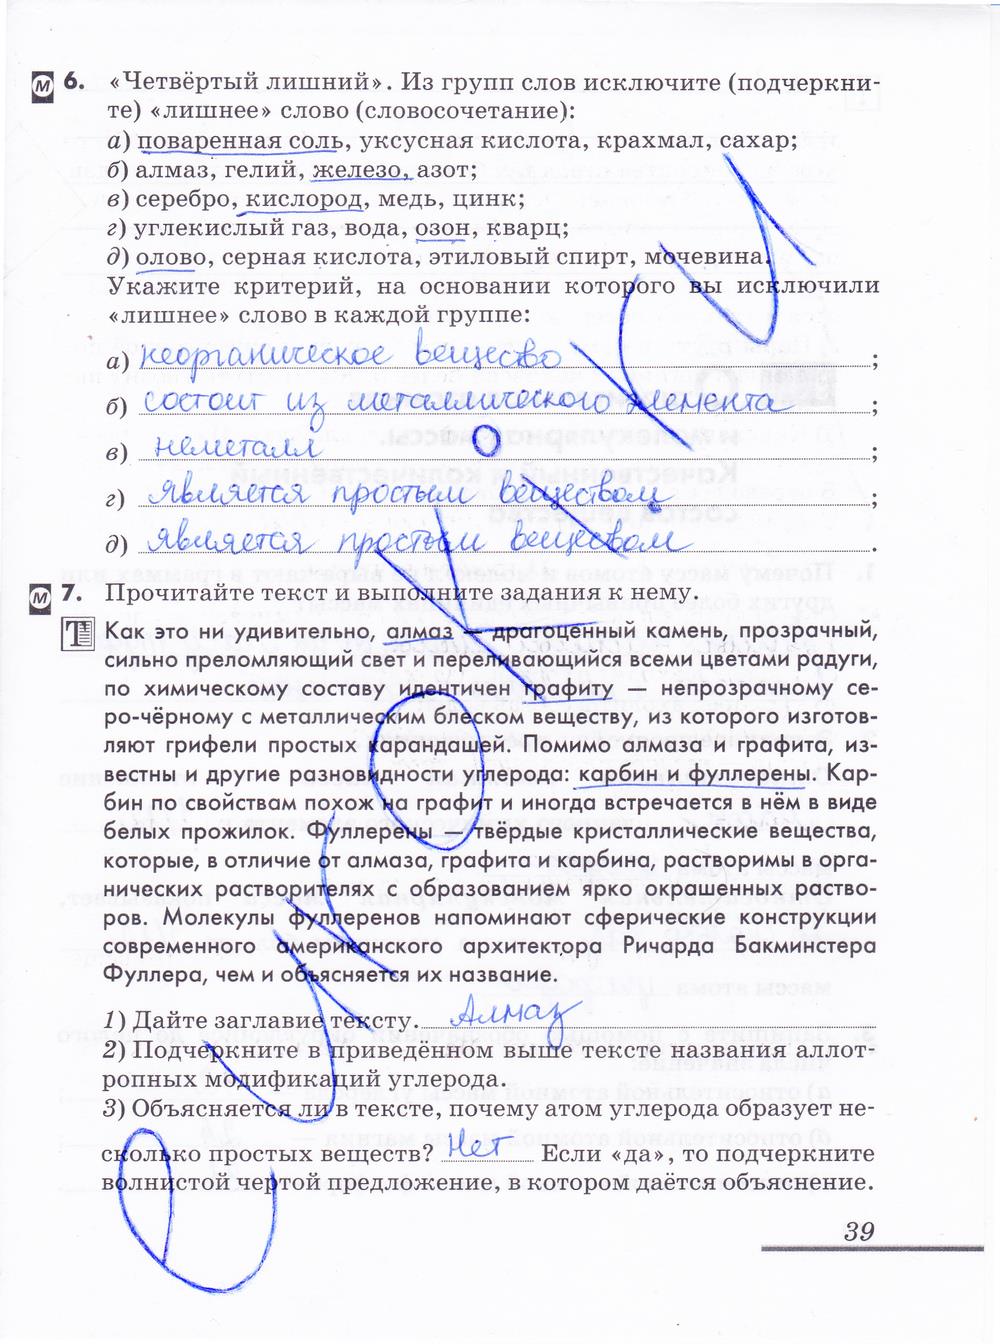 гдз 8 класс рабочая тетрадь страница 39 химия Еремин, Дроздов